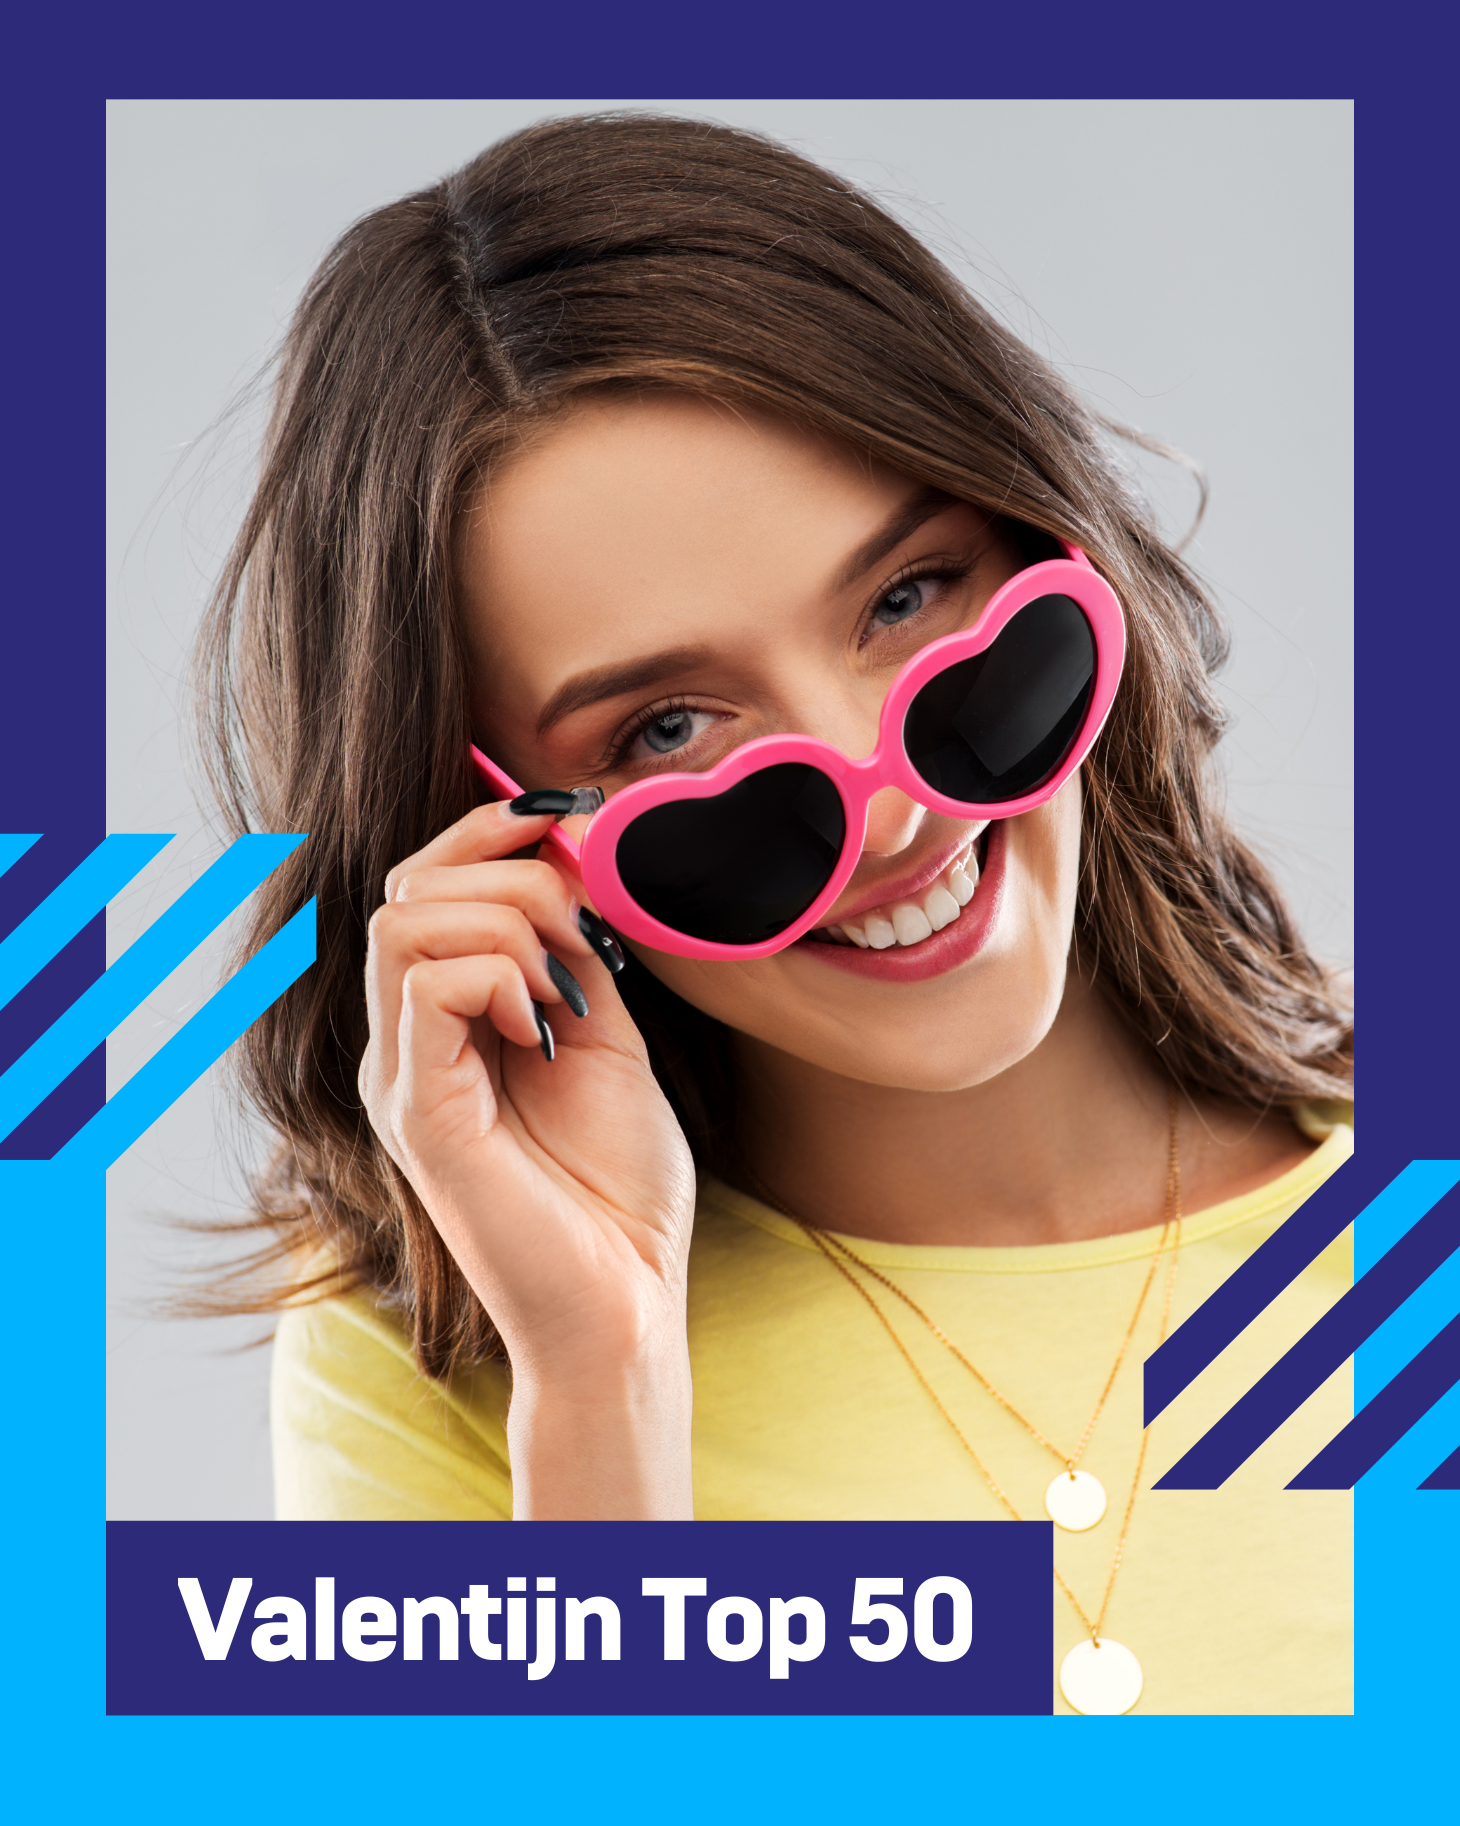 VALENTIJN TOP 50